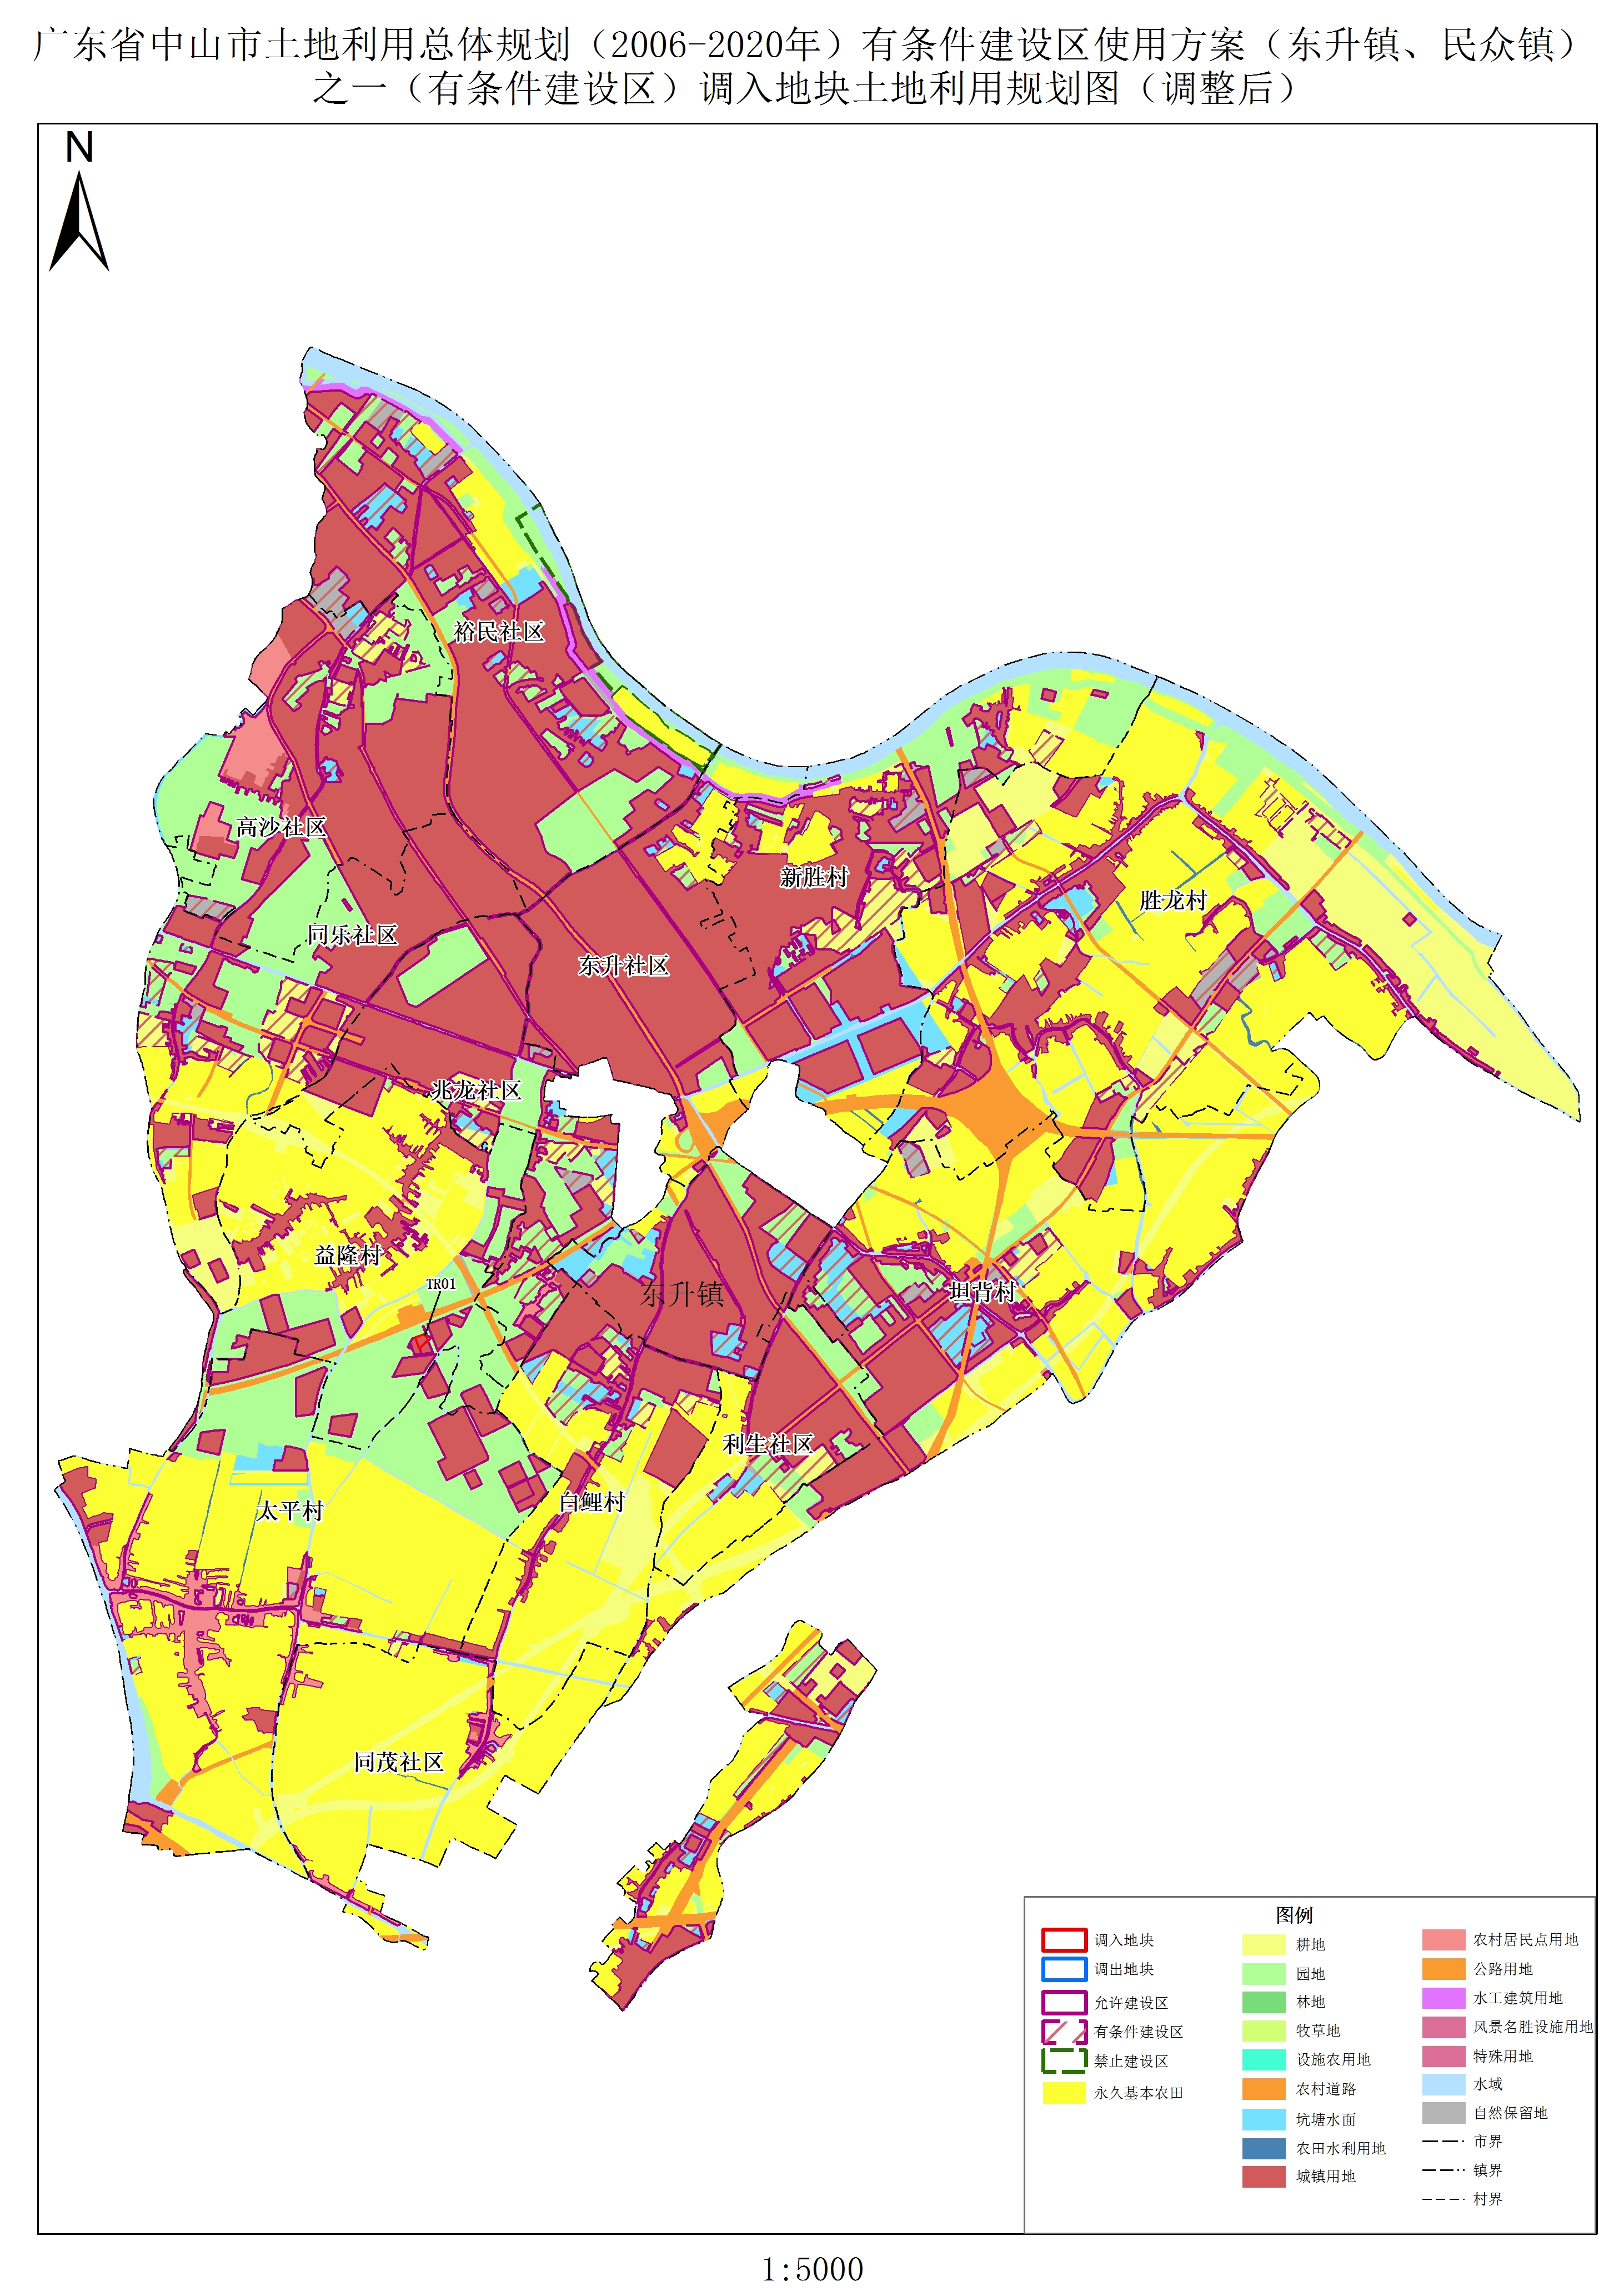 关于《广东省中山市土地利用总体规划(2006